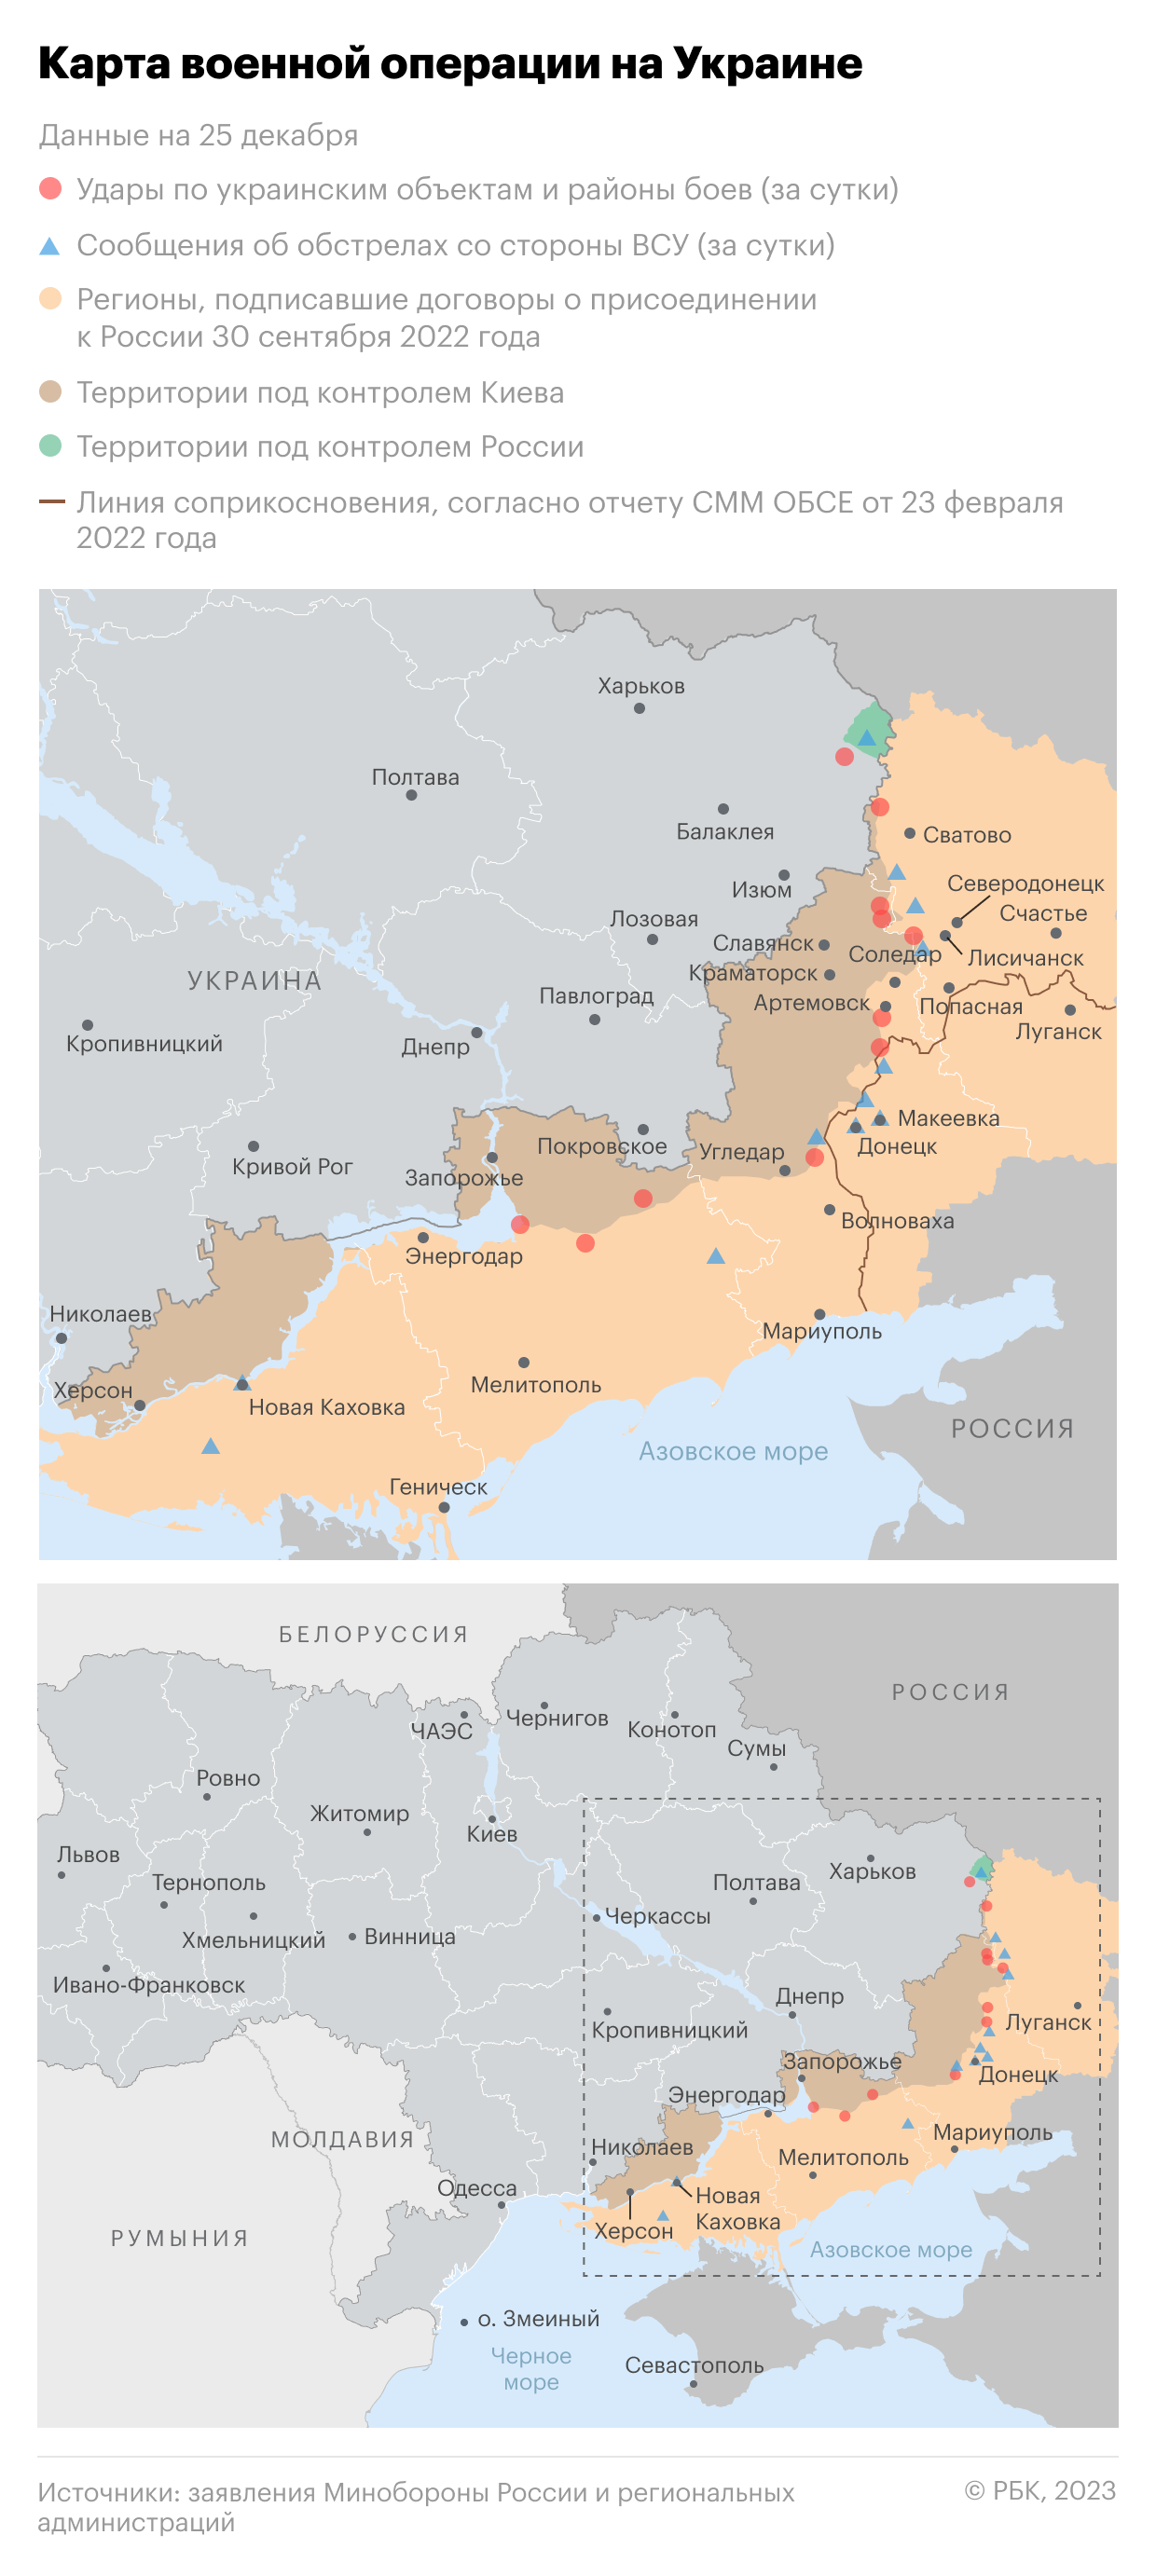 Военная операция на Украине. Карта на 25 декабря